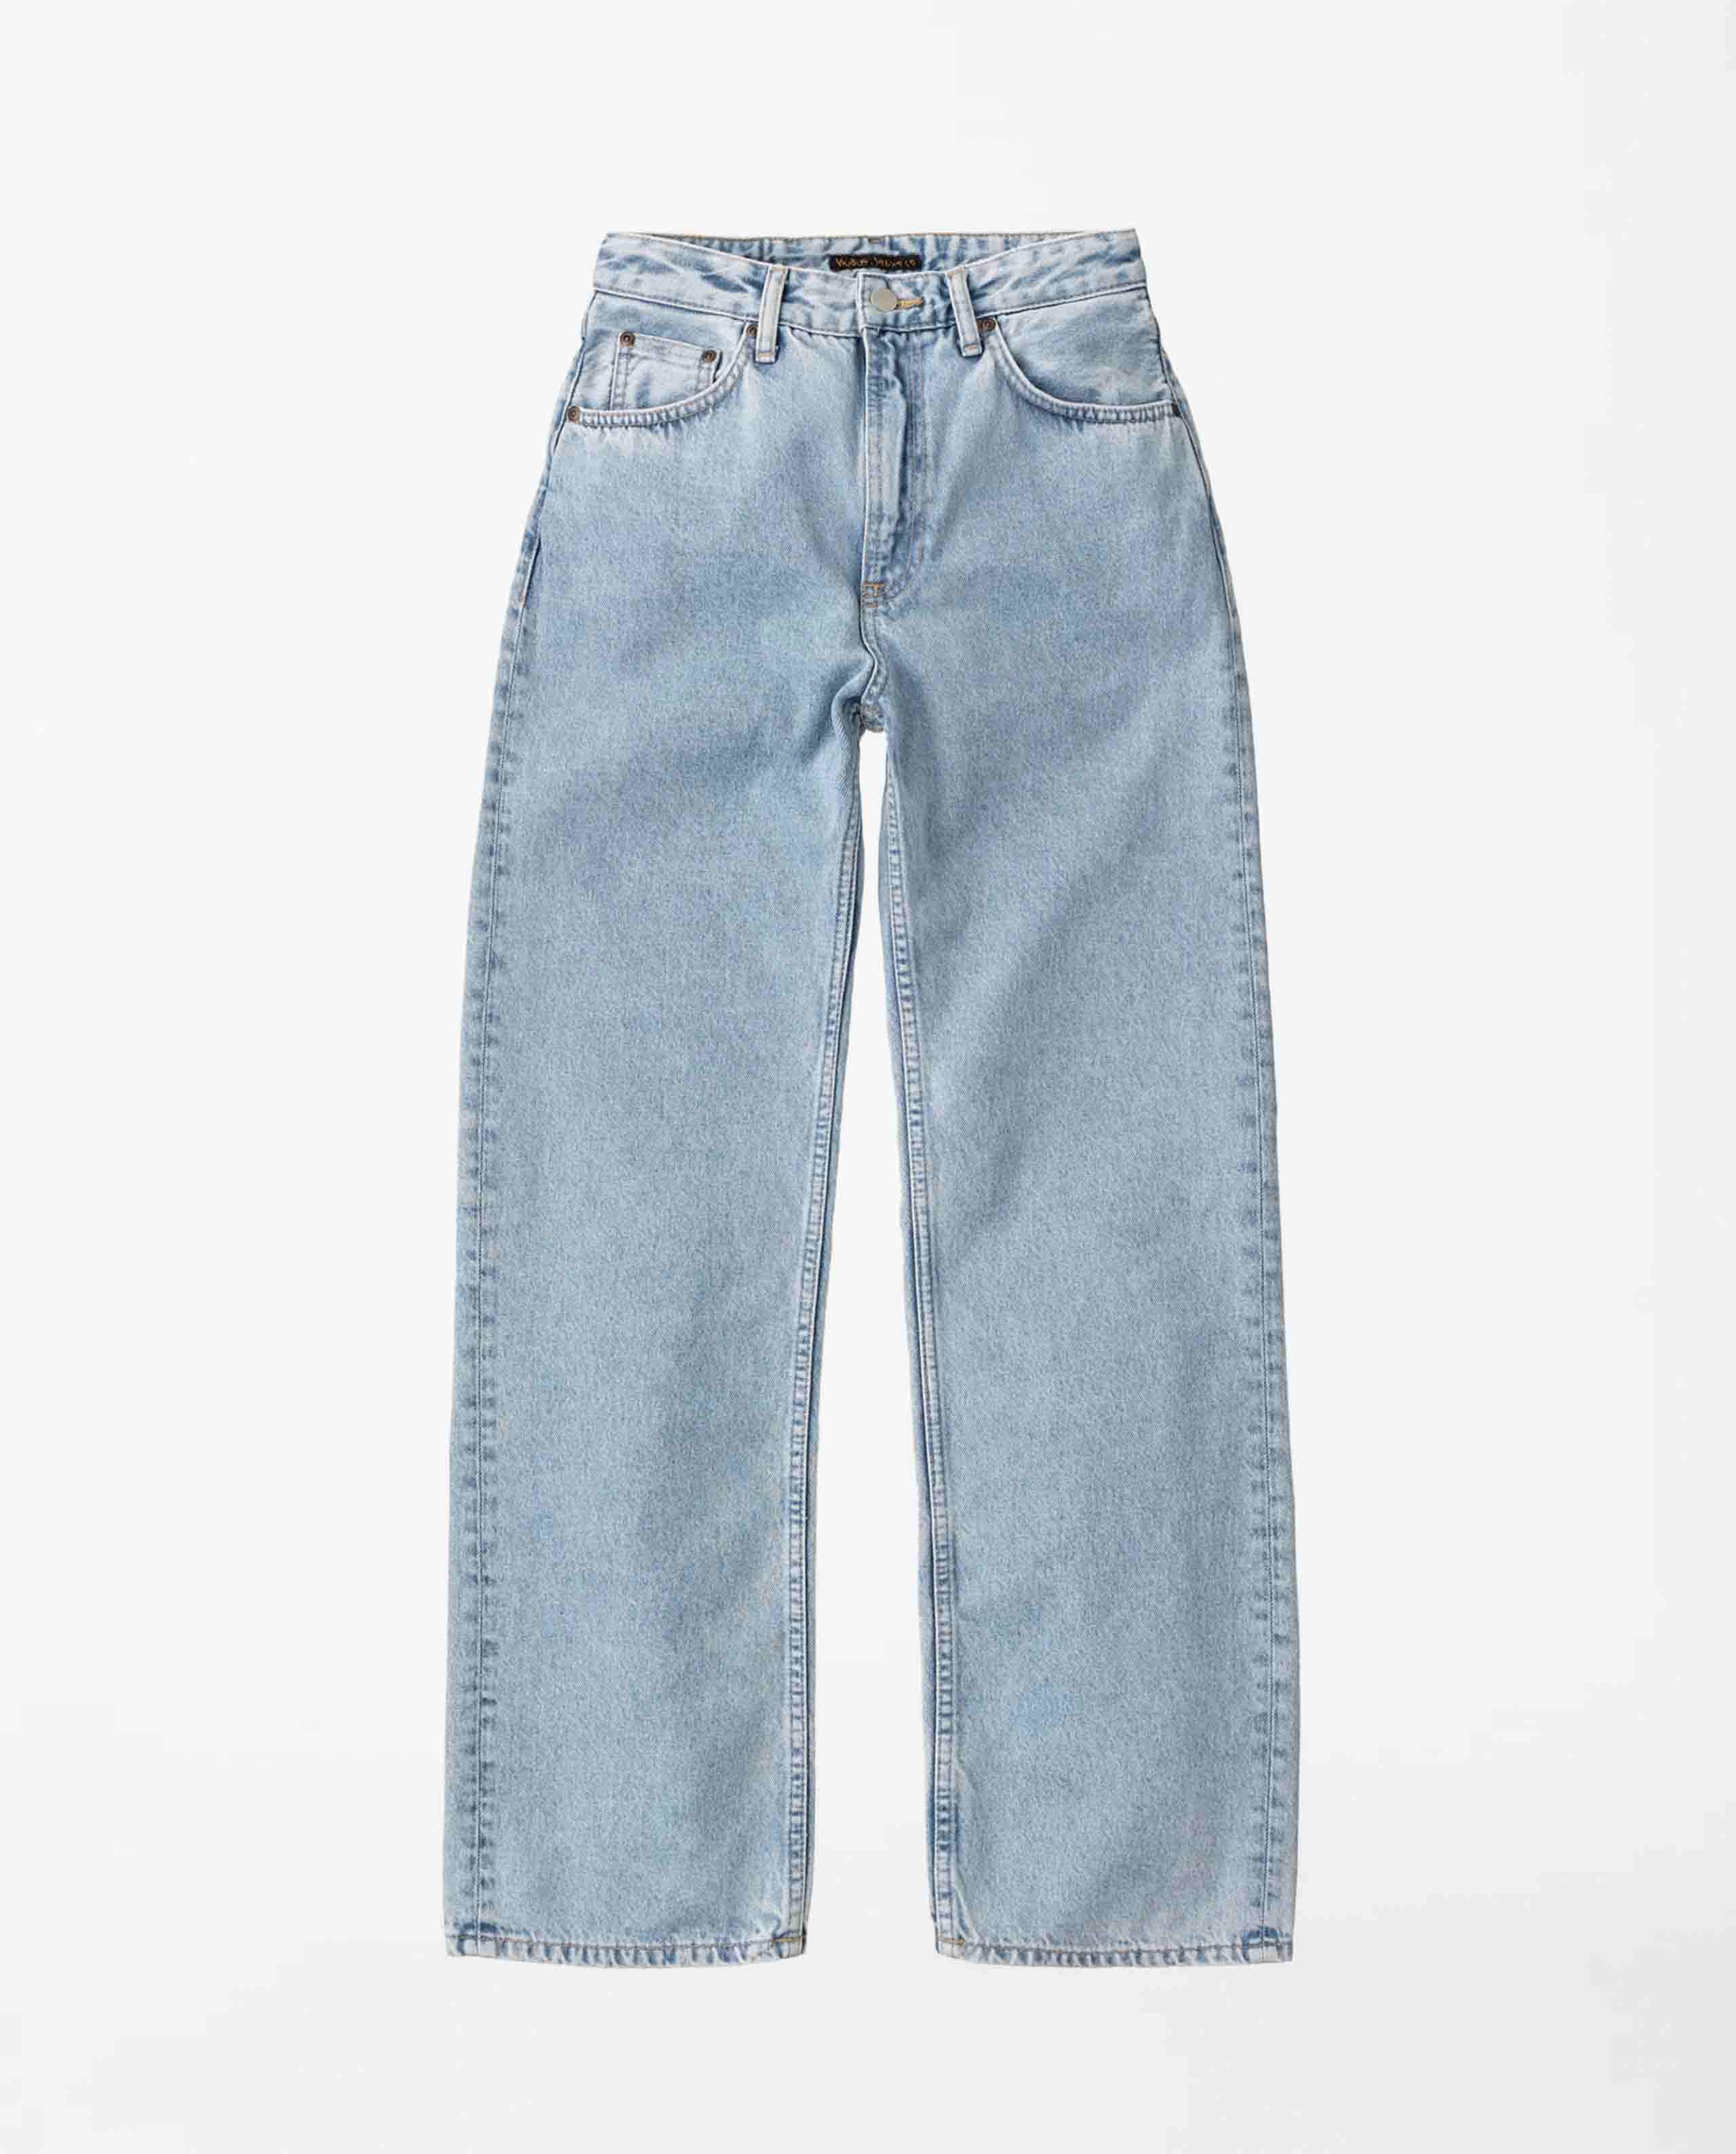 marché commun nudie jeans femme jean ample coton biologique recyclé clean eileen sunny blue bleu clair